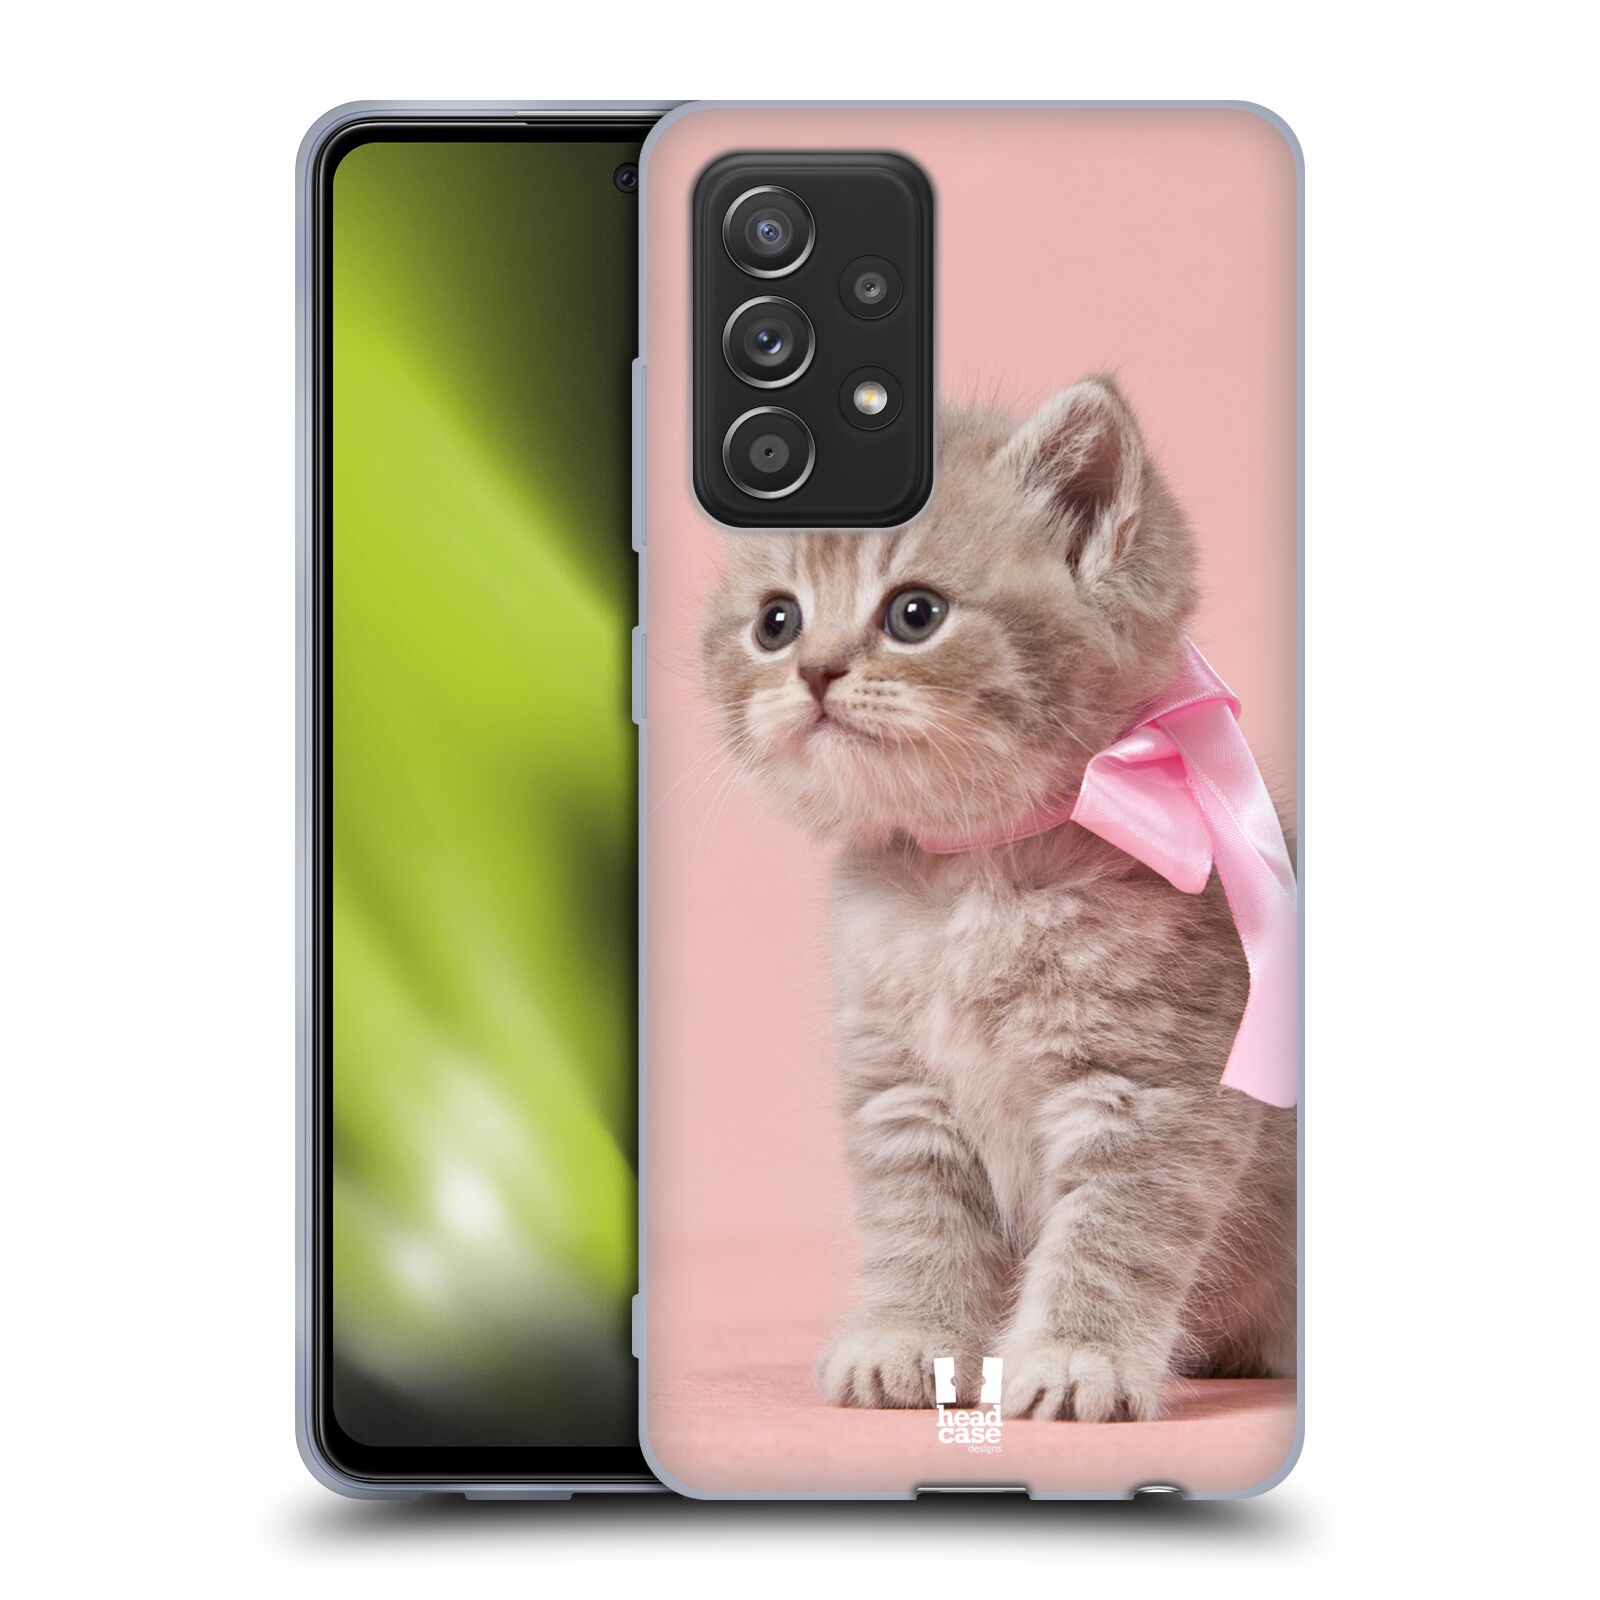 Plastový obal HEAD CASE na mobil Samsung Galaxy A52 / A52 5G / A52s 5G vzor Kočičky koťata foto kotě s růžovou mašlí